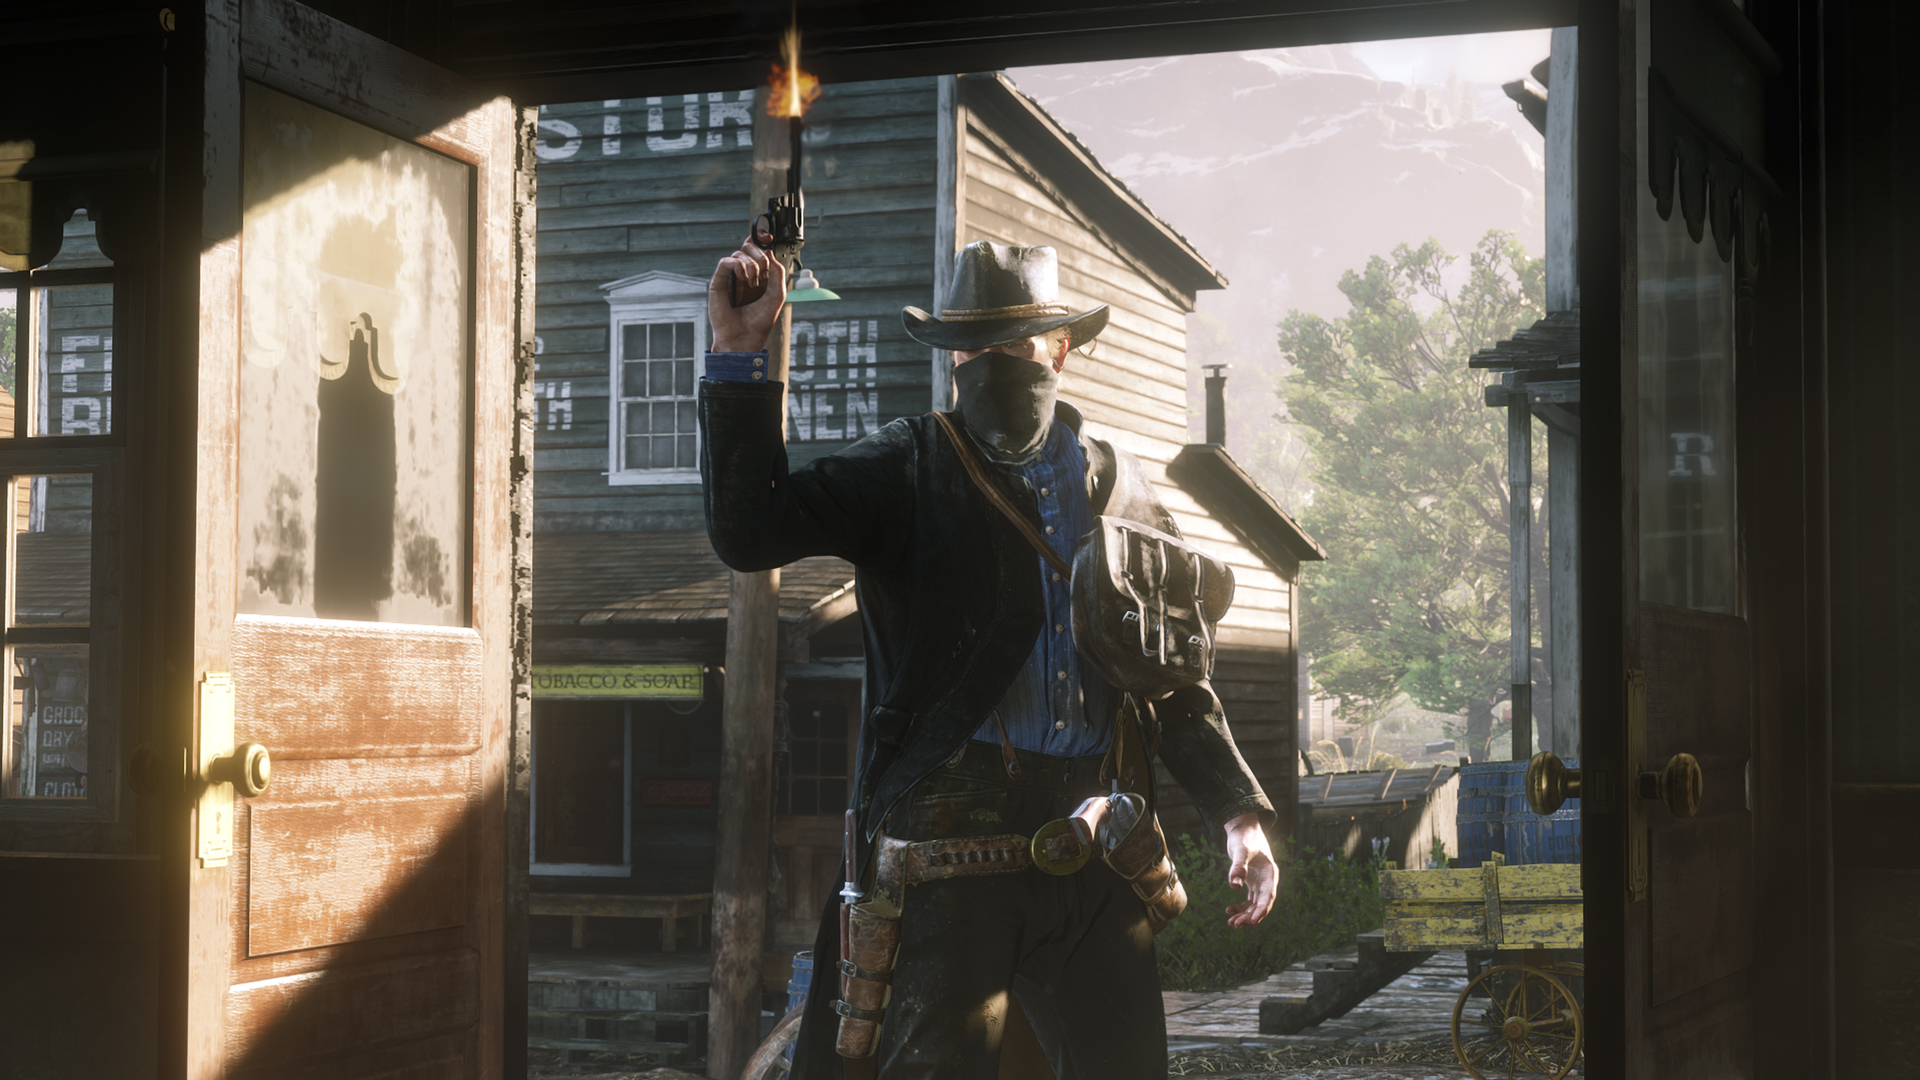 Red Dead Redemption 2: Dicas para melhorar o desempenho no PC